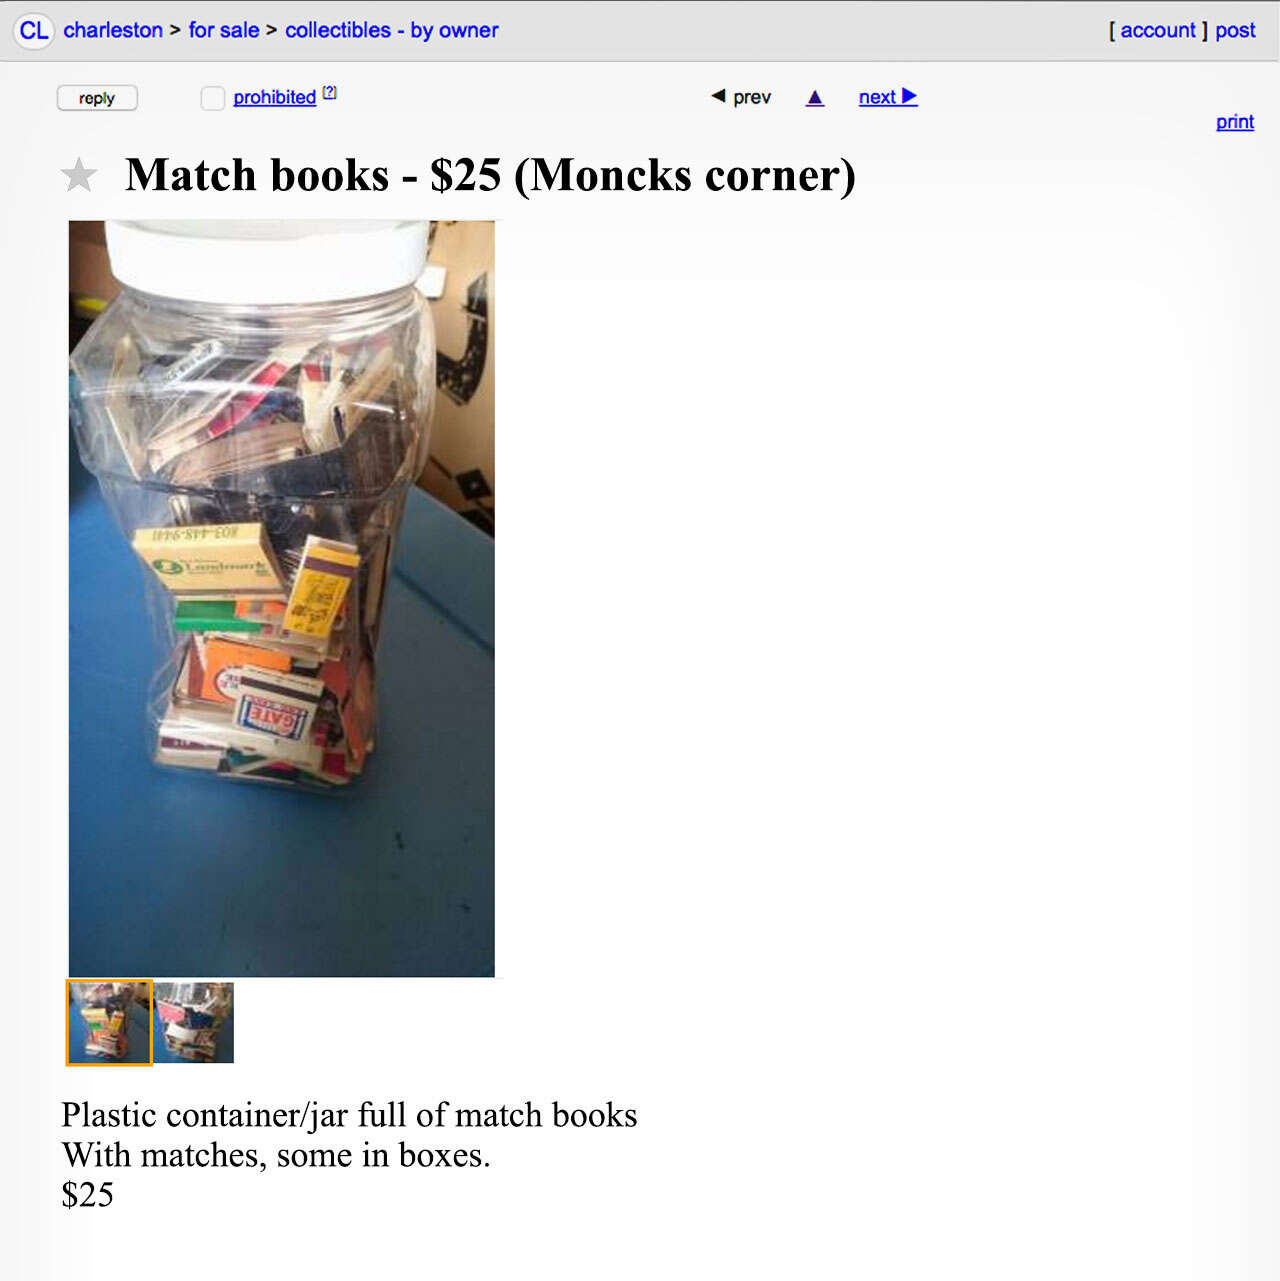 A Craigslist advertisement for matchbooks. 